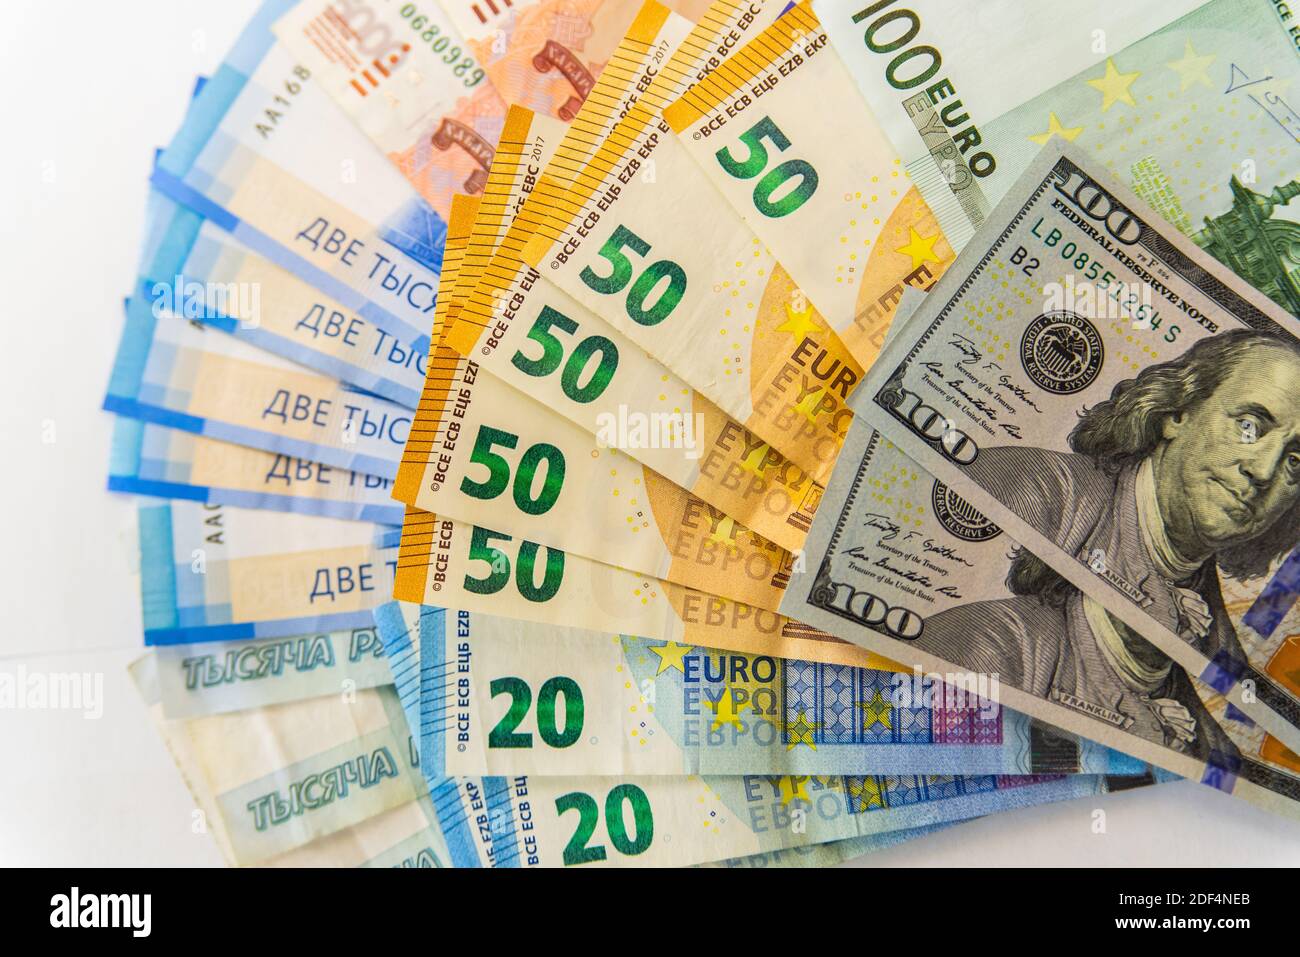 Доллар и евро цена. Евро Dollar ruble. Доллары евро рубли рисунки. Currency Dollar Euro. Rubl and Euro photo.